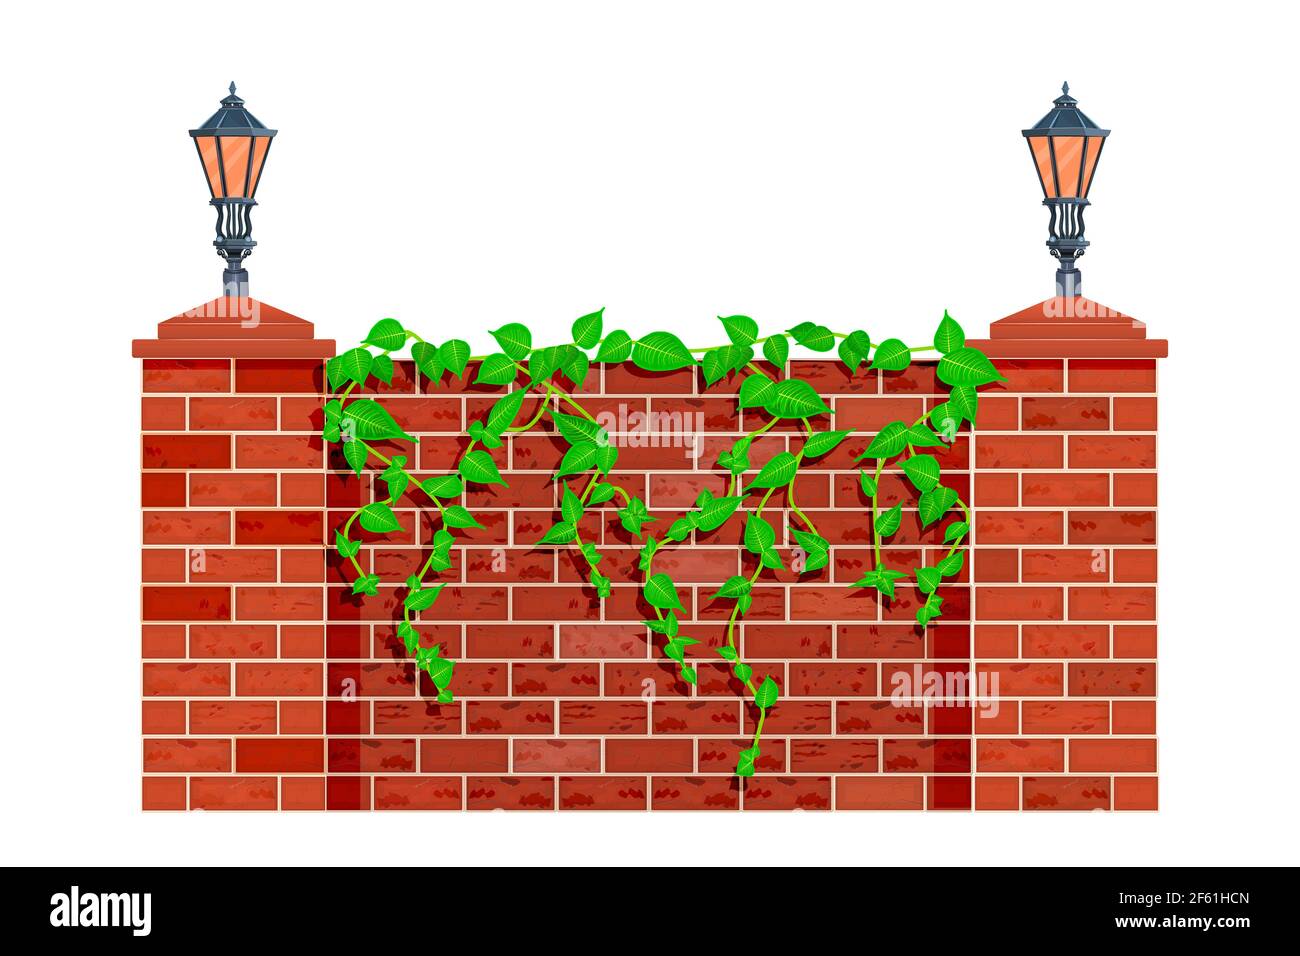 Zaun mit Kletterpflanze. Lianen oder Efeu auf rotem Ziegelzaun oder Wand. Stadtpark oder Garten Mauerwerk Barriere mit Straßenlaternen und Kräuterblätter. Vektor Stock Vektor